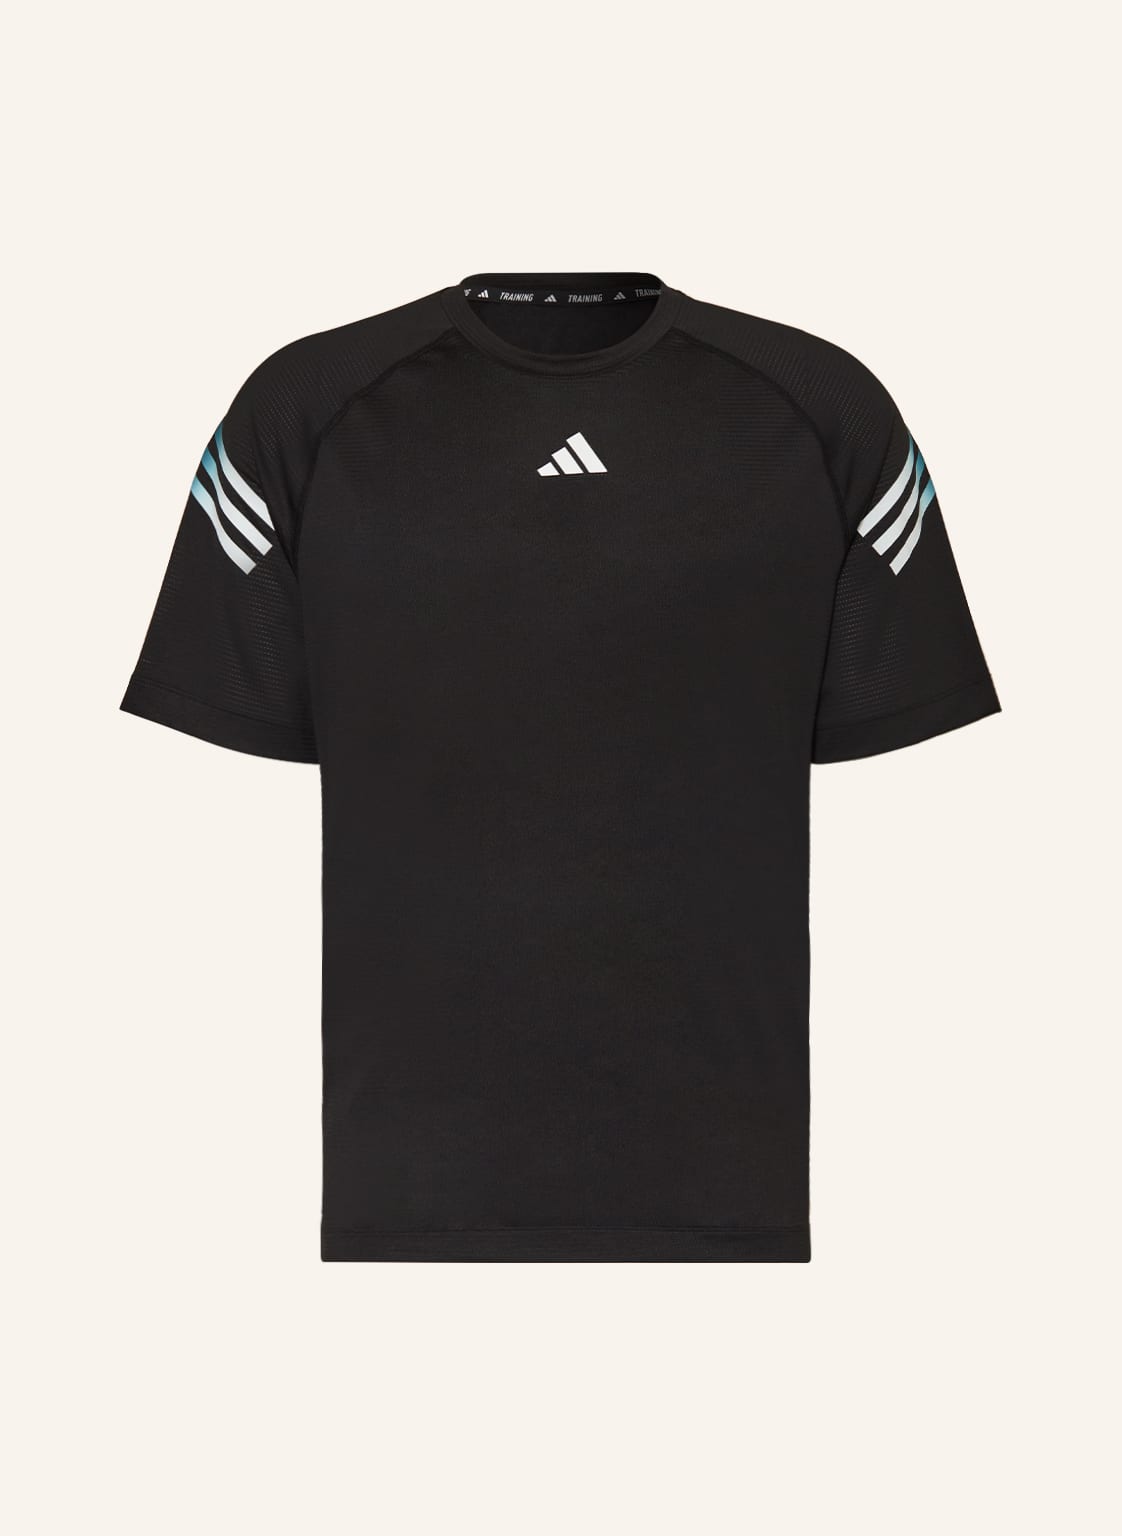 Adidas T-Shirt Train Icons schwarz von Adidas